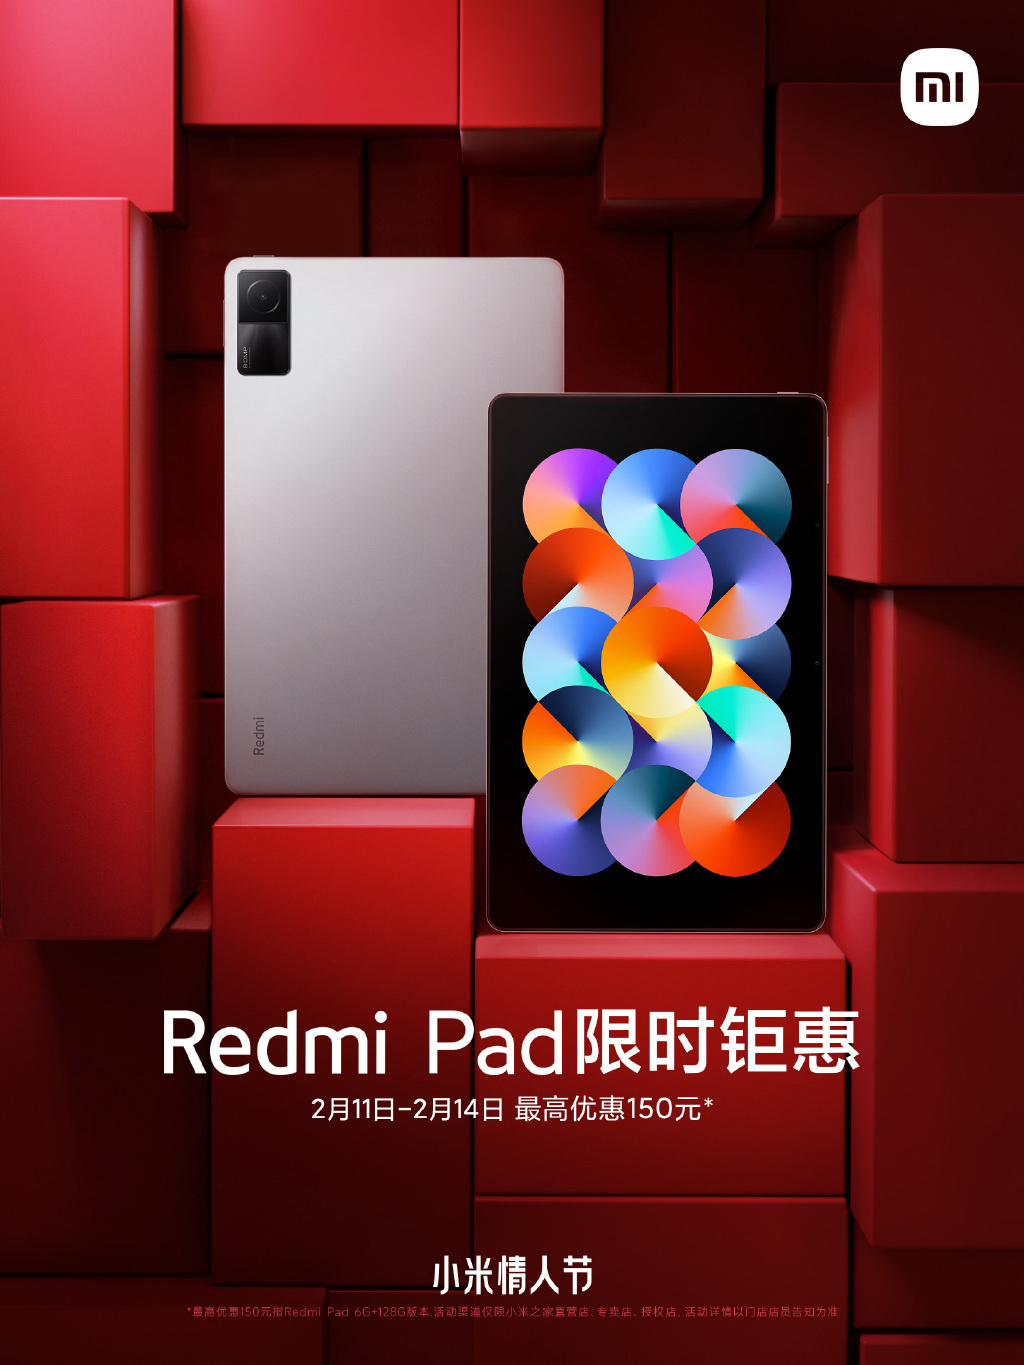 Redmi Note 4 Mi Account